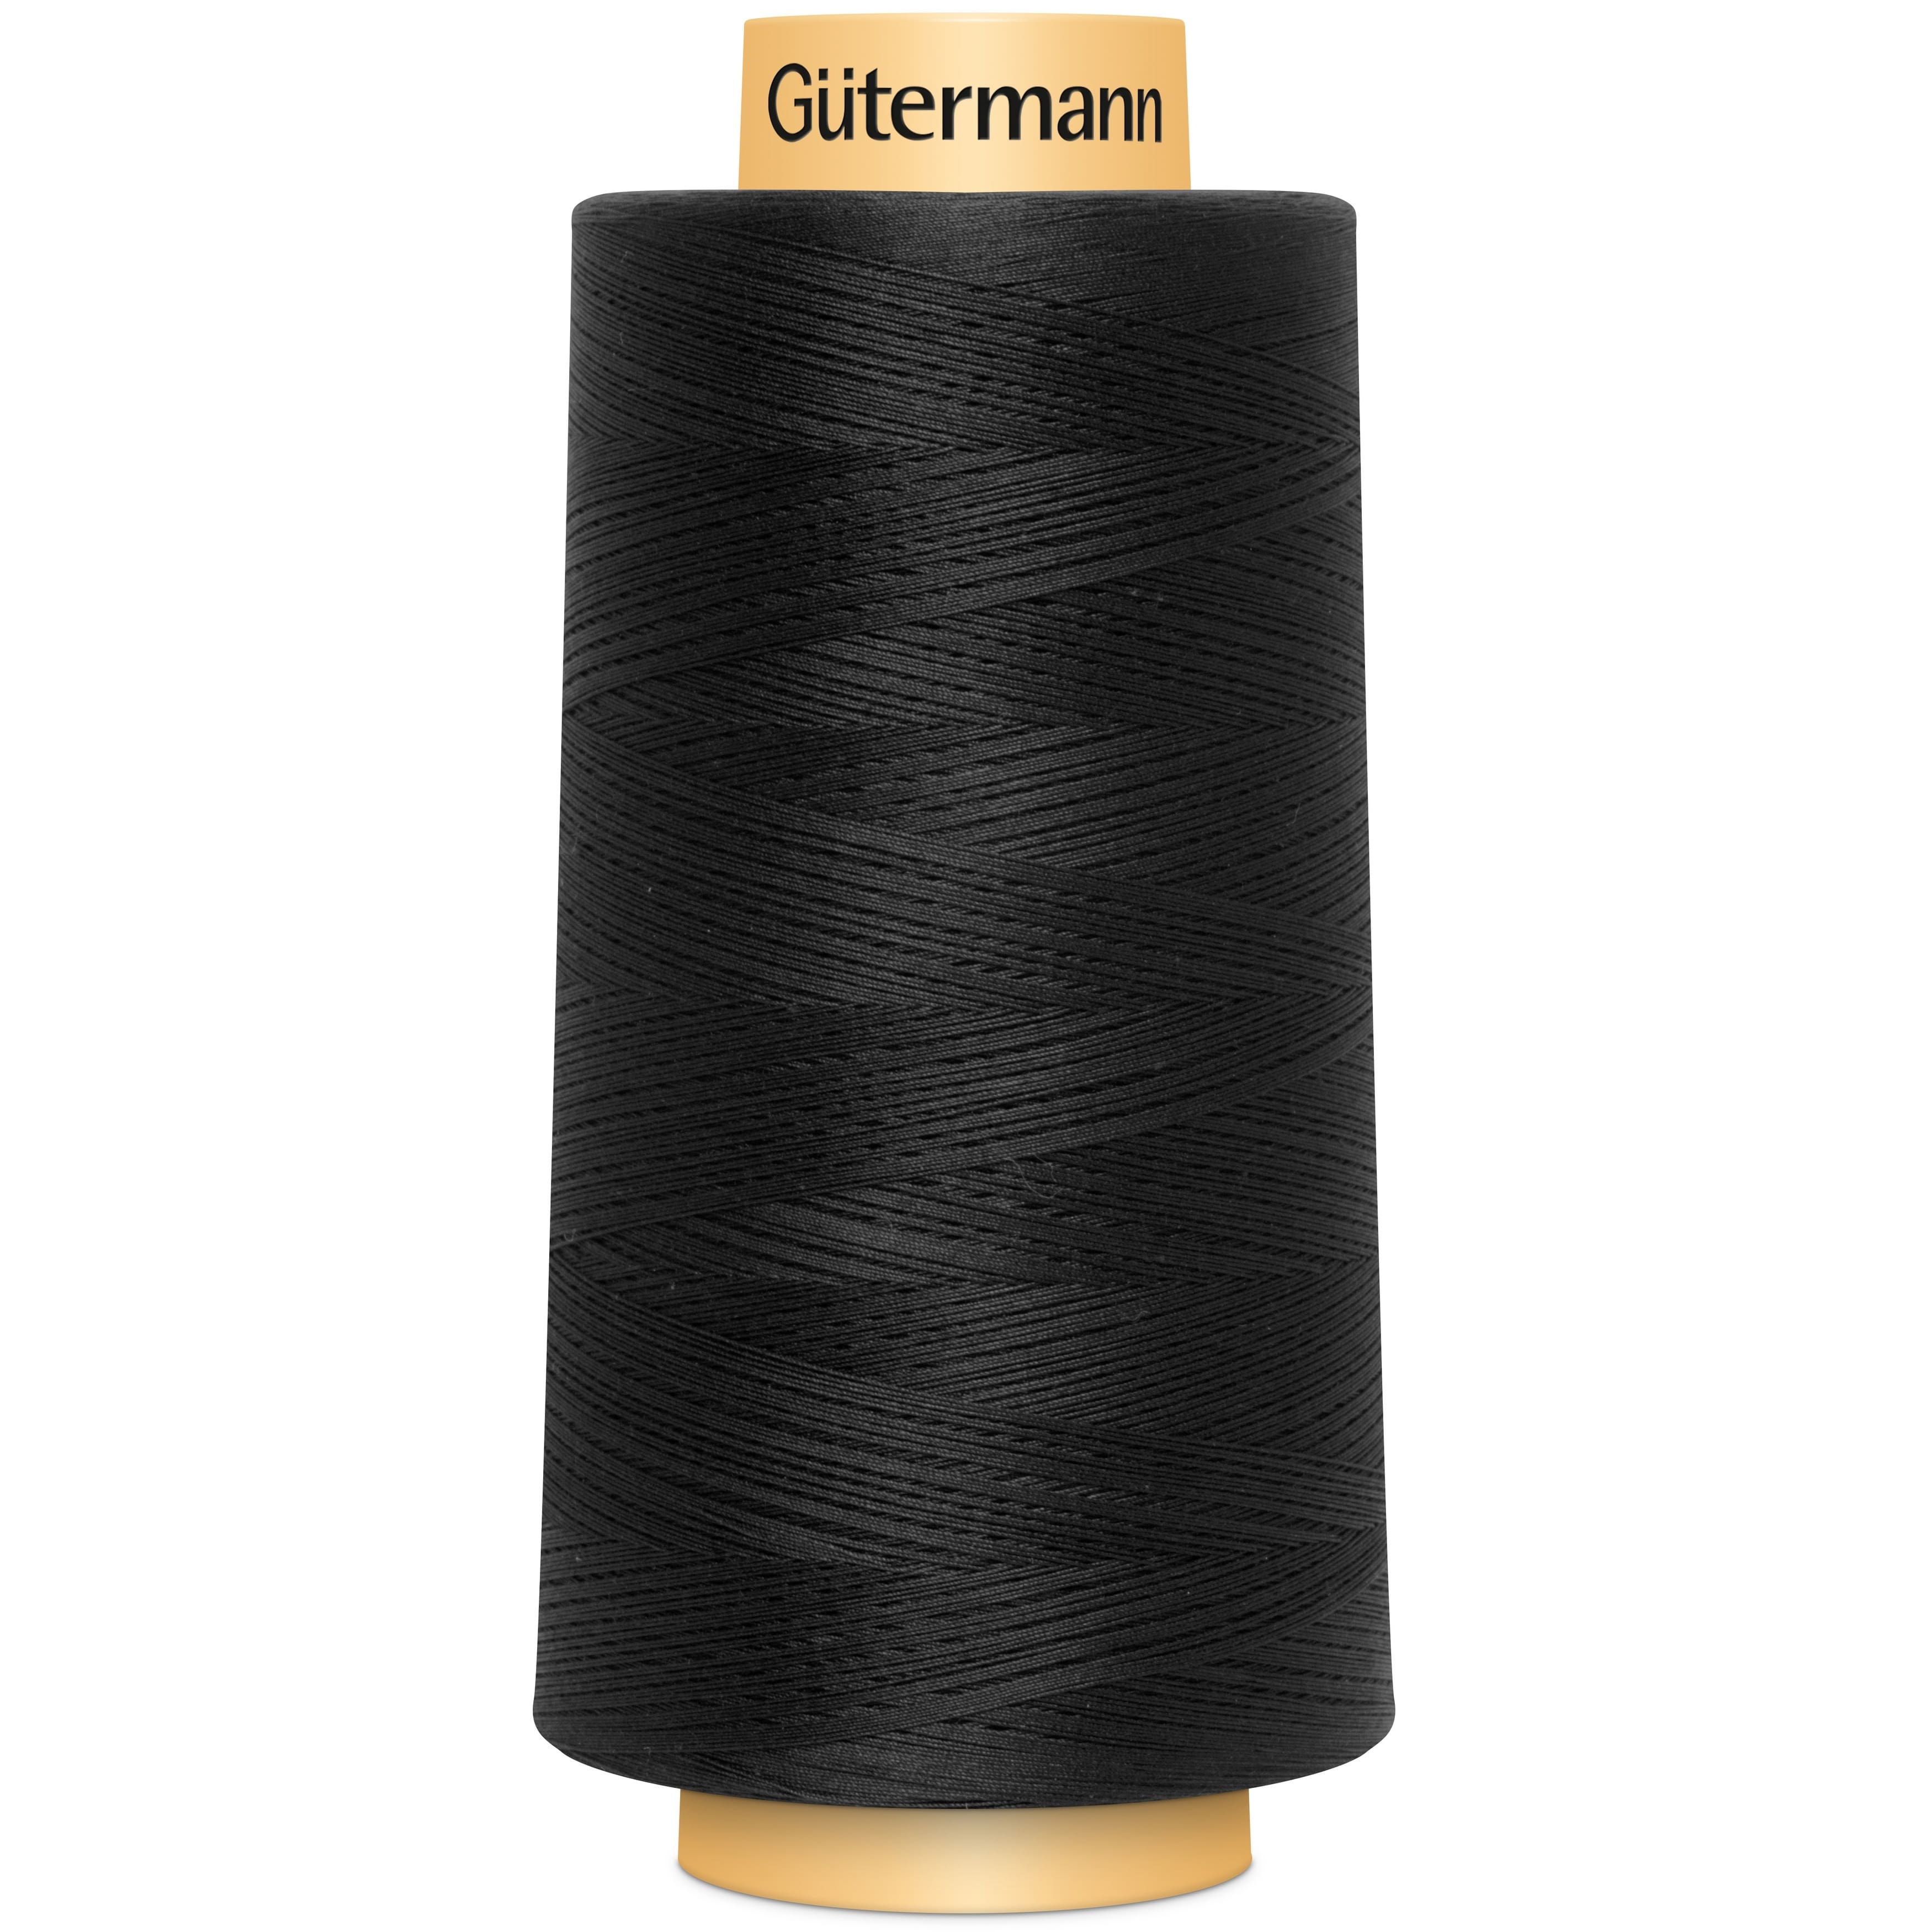 Gütermann Natural Cotton Thread, 3,281yd.